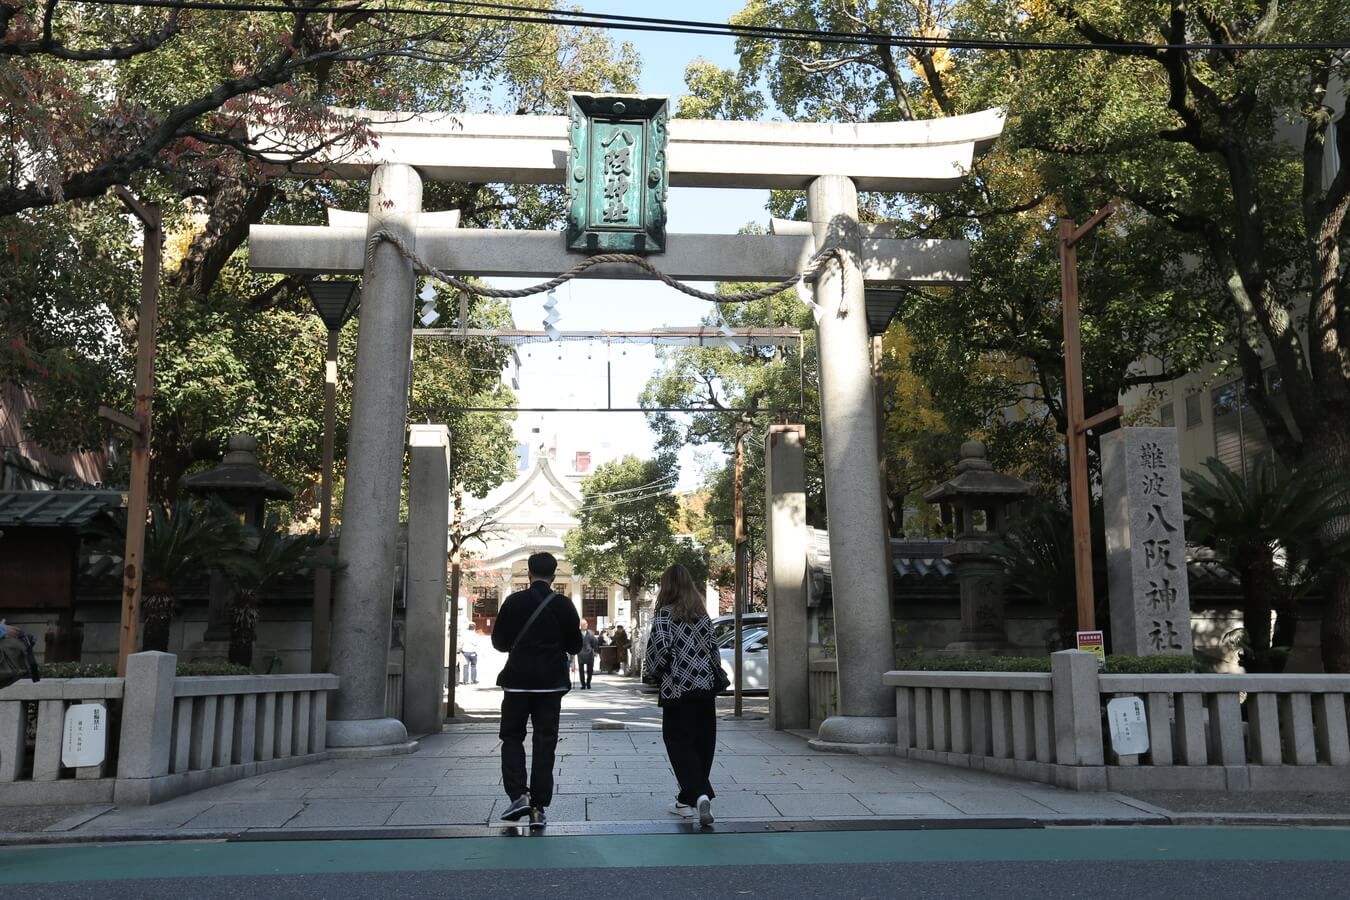 ศาลเจ้านัมบะ(Namba Yasaka Shrine) ศาลเจ้าโอซาก้า ศาลเจ้าหัวสิงโต วัดโอซาก้า เที่ยวนัมบะ เที่ยวโอซาก้า เที่ยวคันไซ